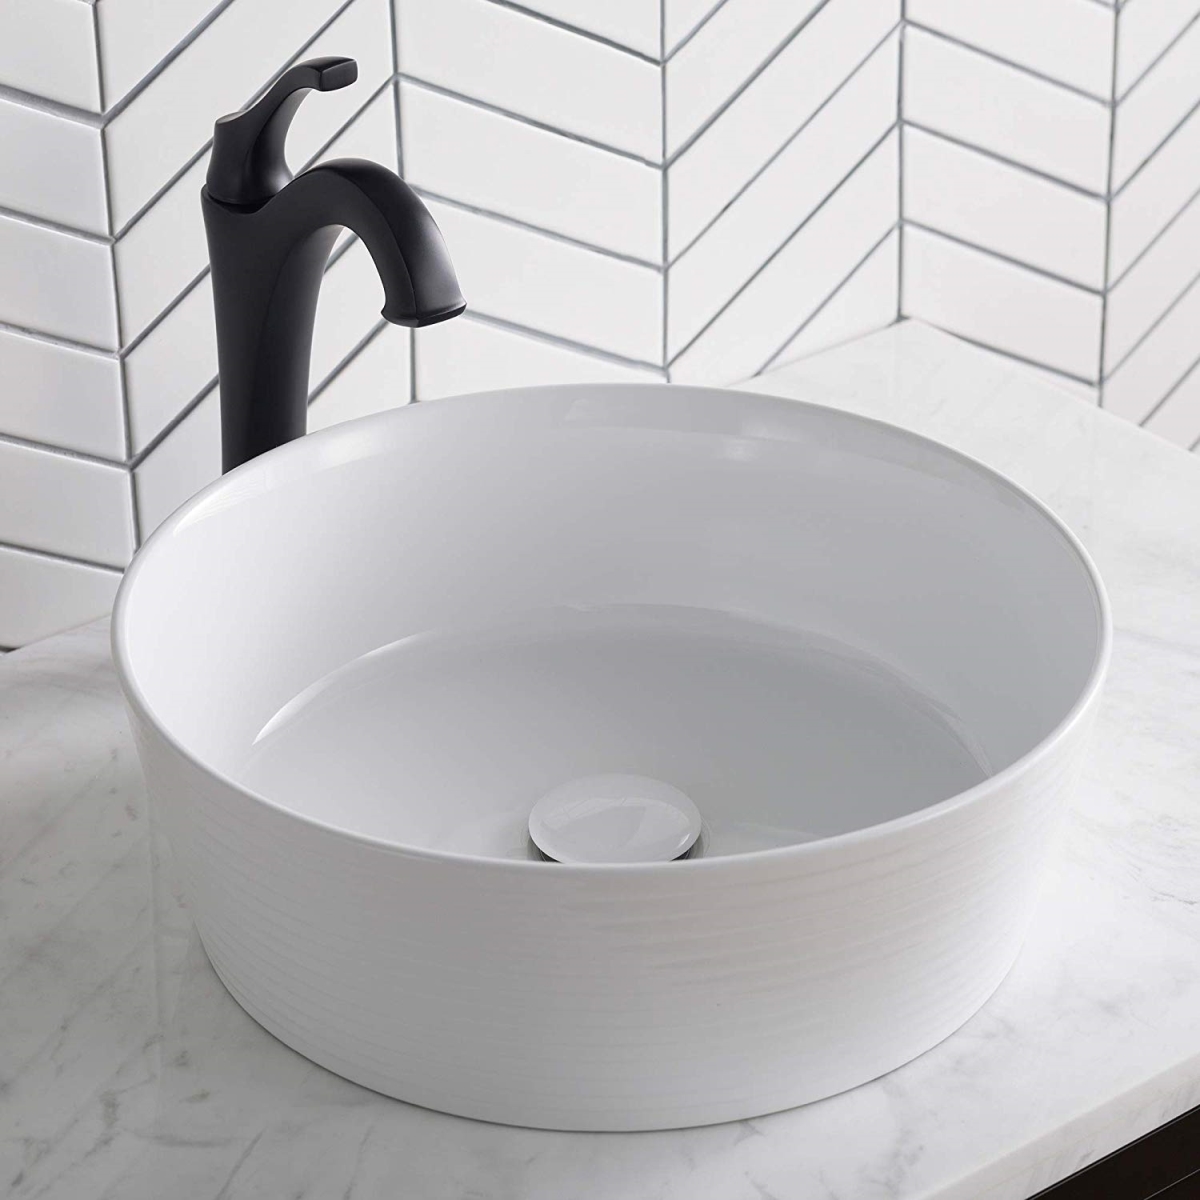 Kraus Kcv-205gwh 15.75 X 5.37 In. Round Porcelain Ceramic Vessel Bathroom Sink, White